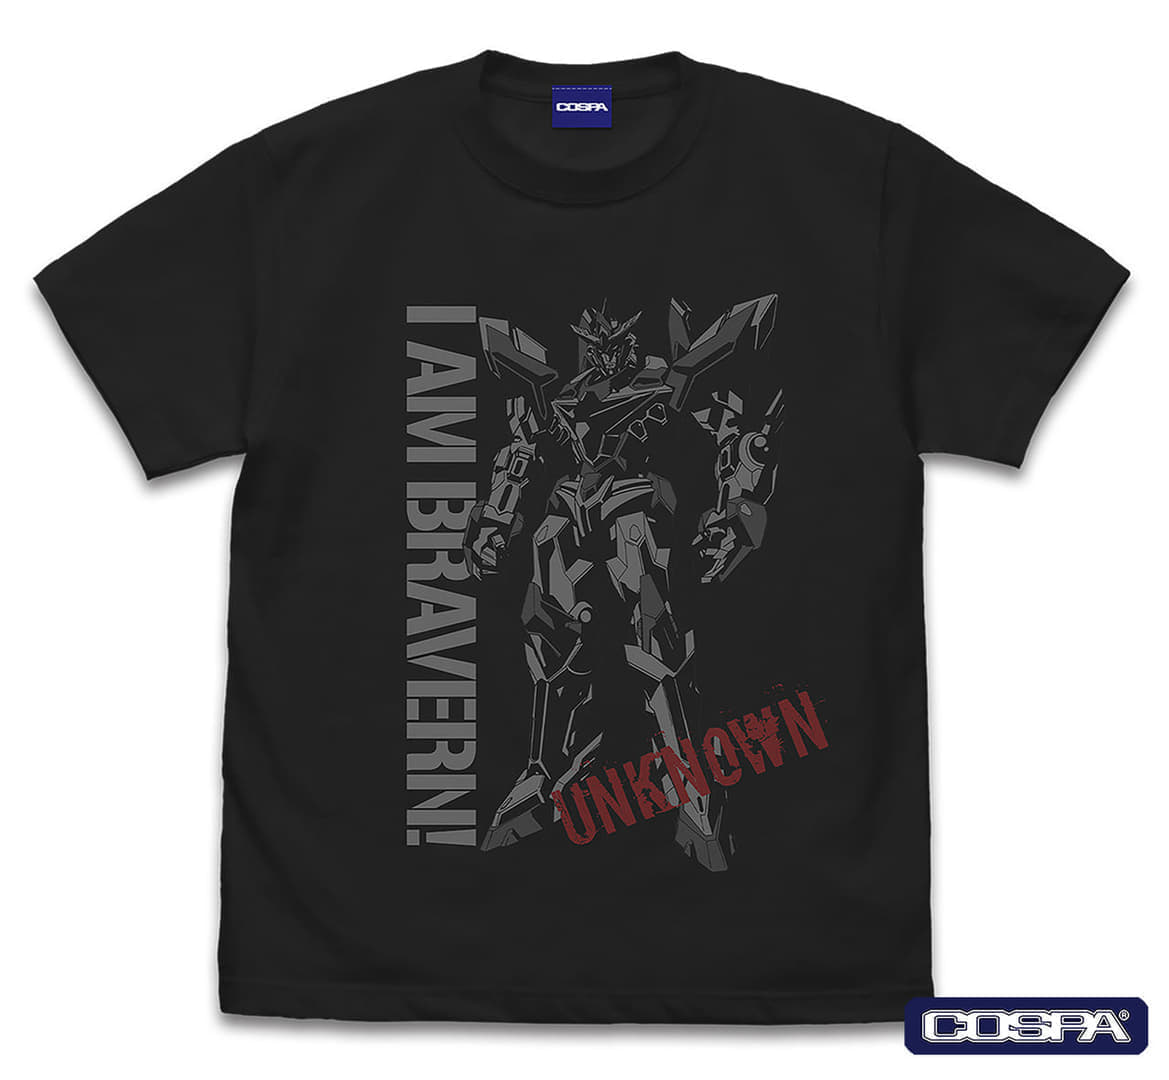 『勇気爆発バーンブレイバーン』の「イサミィーーッ！Tシャツ」が販売決定_002